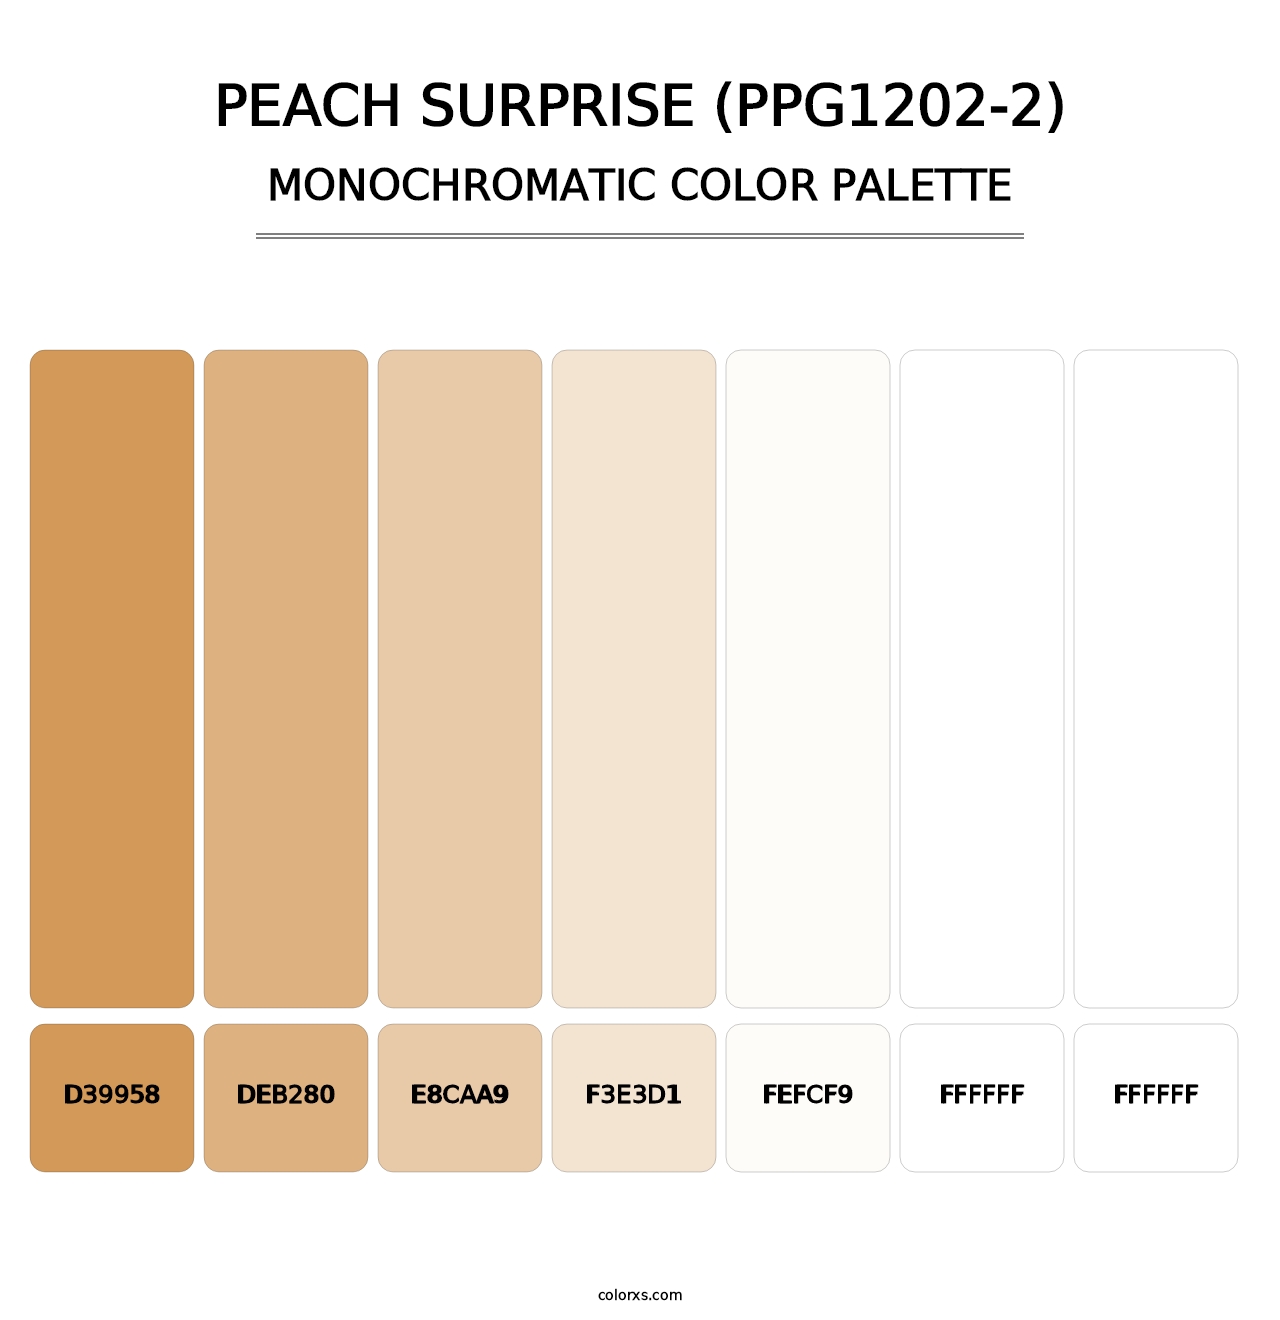 Peach Surprise (PPG1202-2) - Monochromatic Color Palette